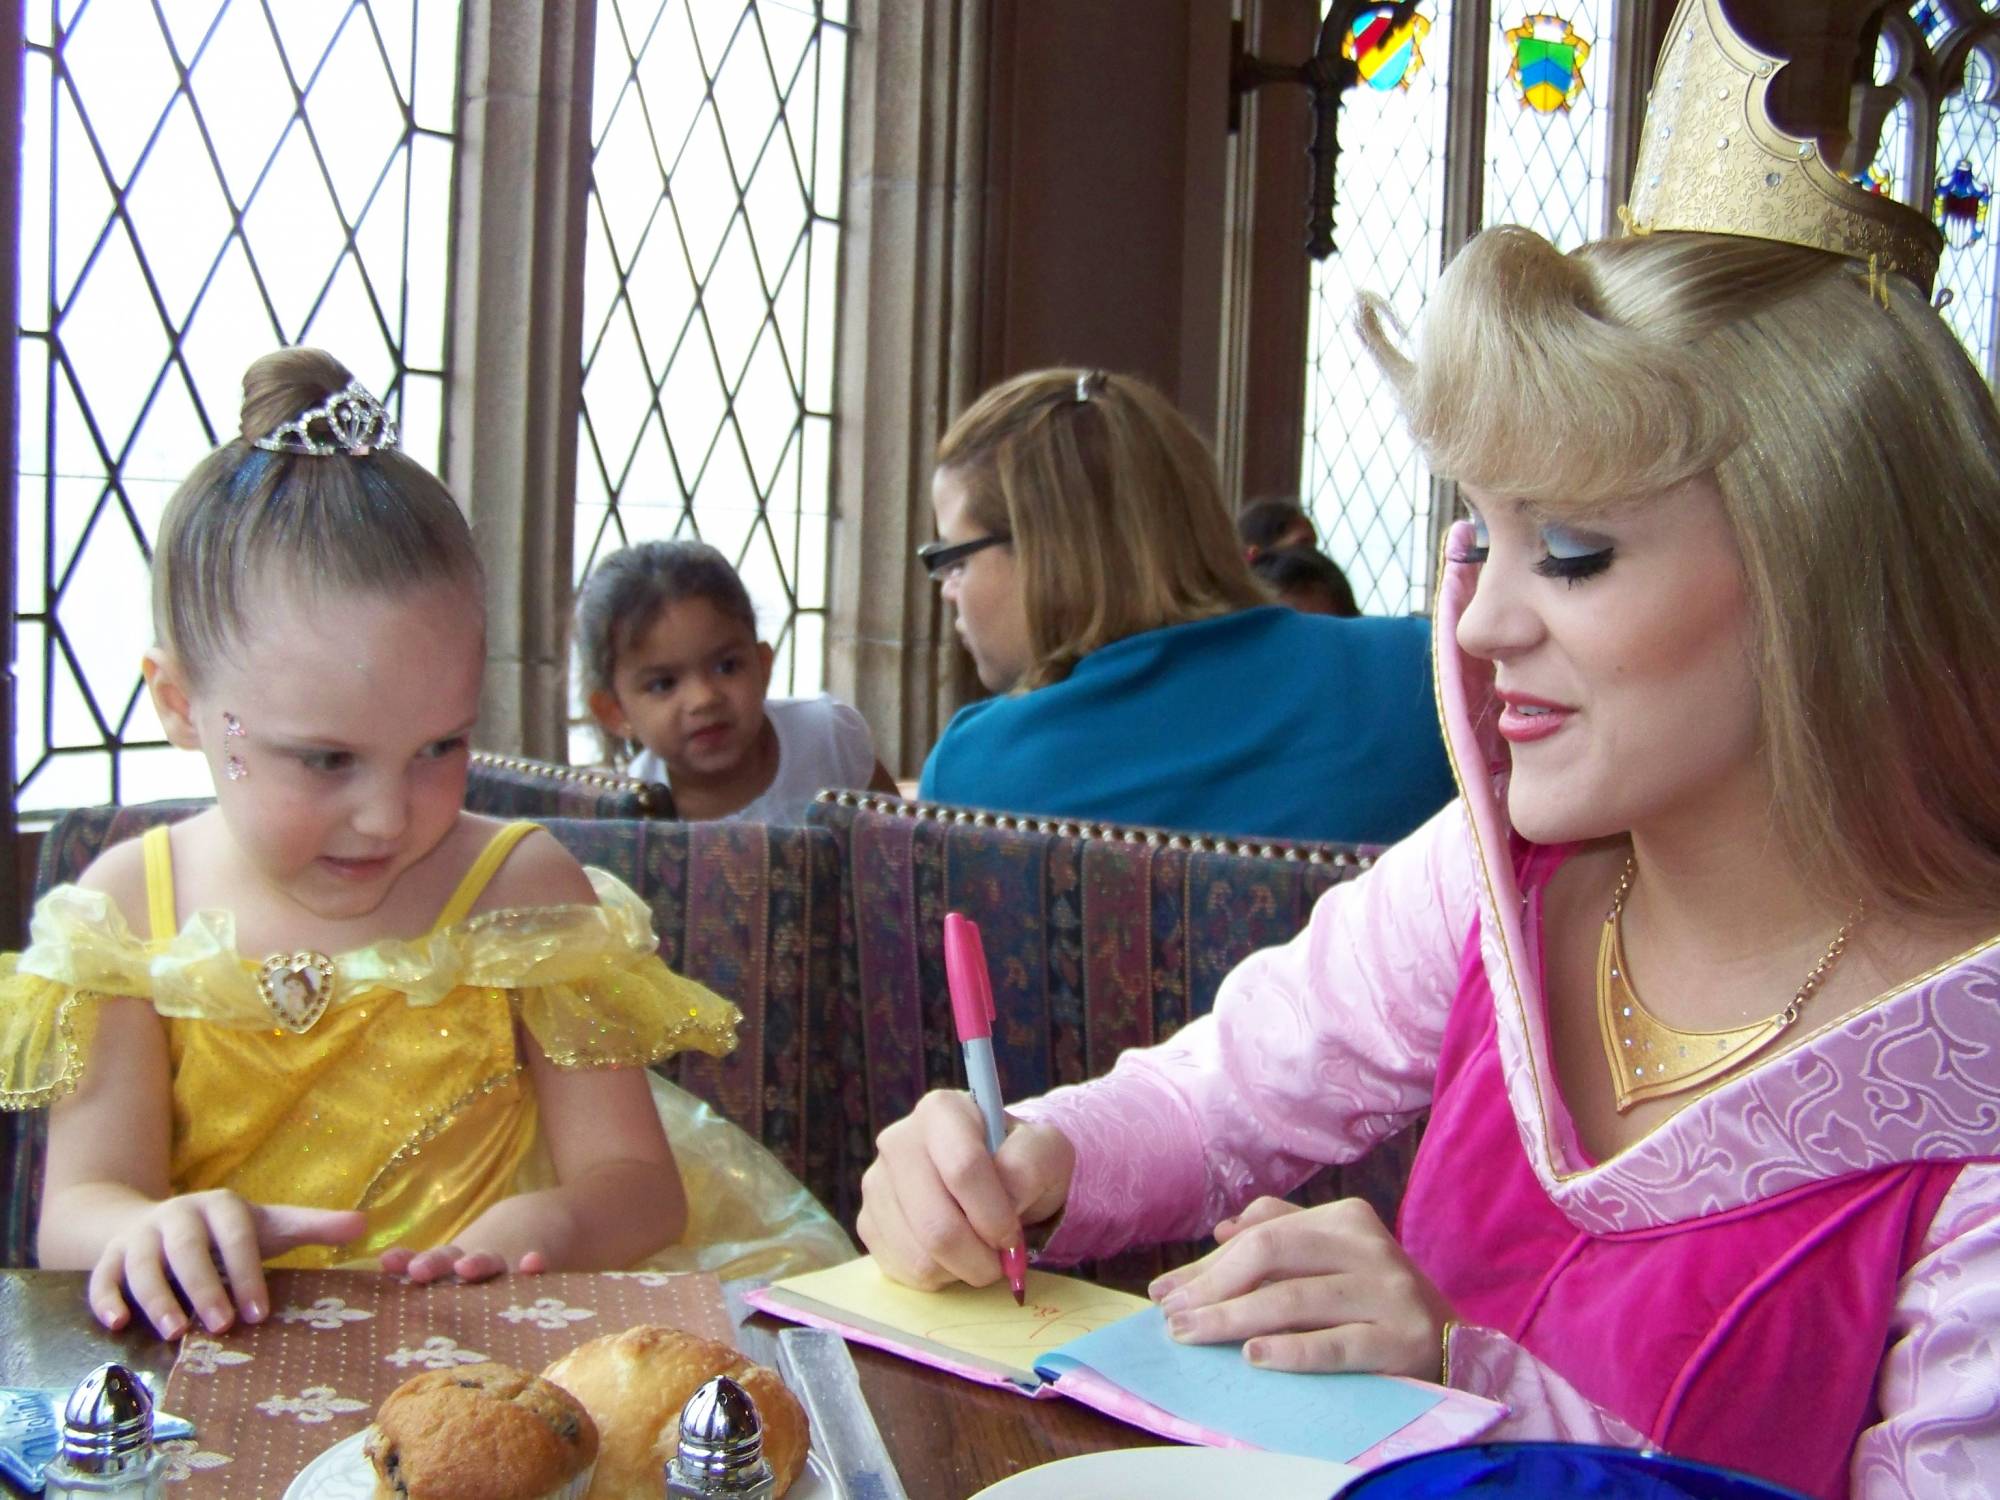 Princess Aurora at Cinderella's Royal Table